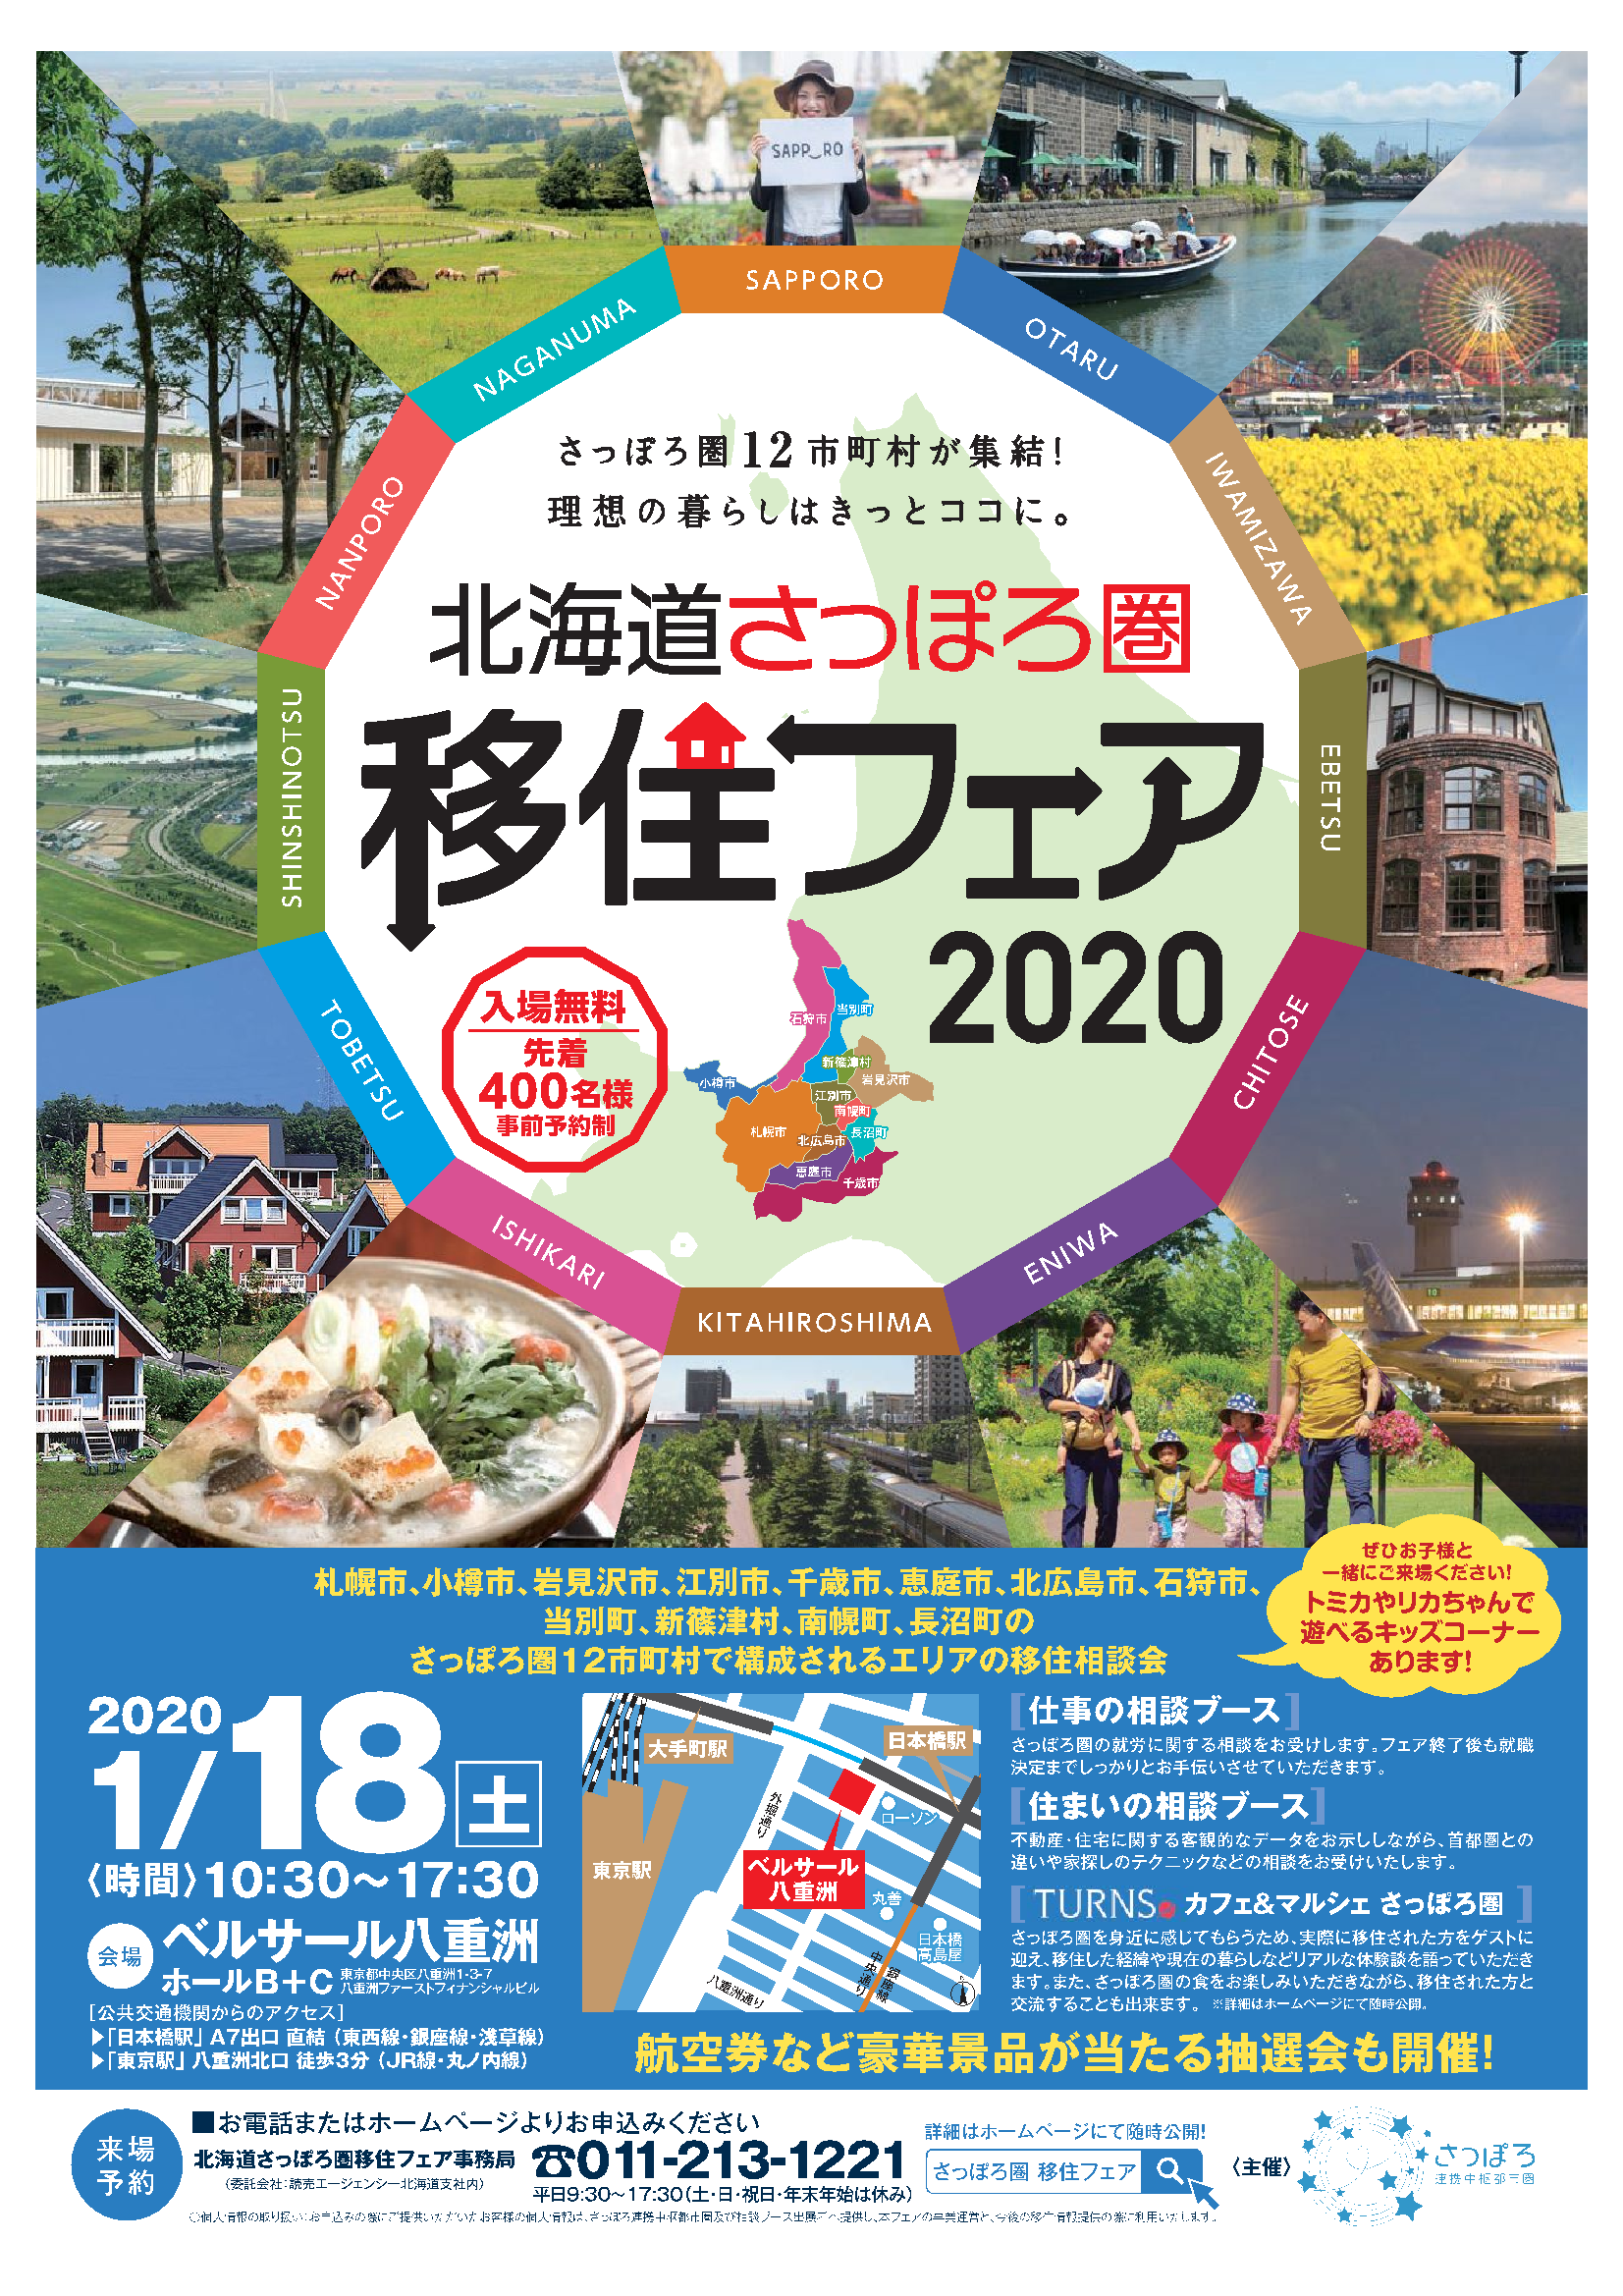 東京開催の「北海道さっぽろ圏移住フェア2020」に出展します！